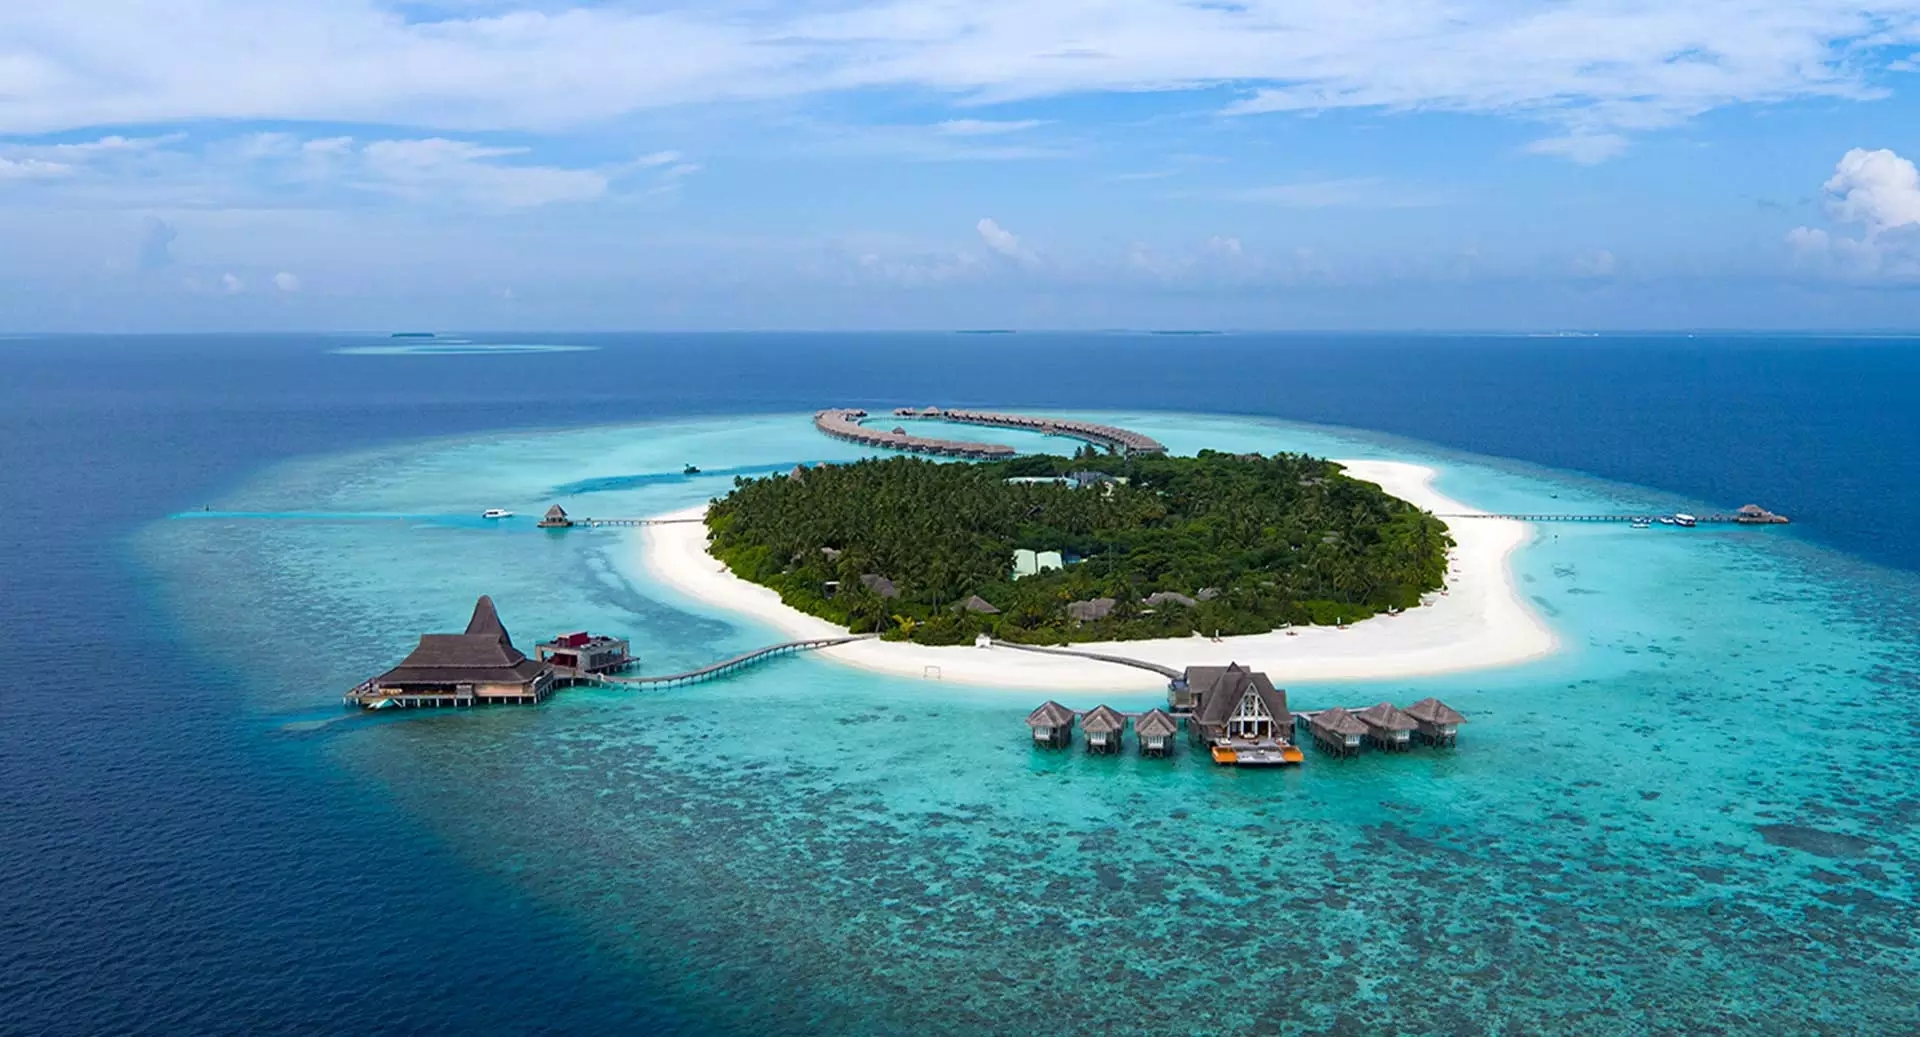 2020年马尔代夫详细选岛攻略——马尔代夫选岛攻略精华篇 - 马蜂窝